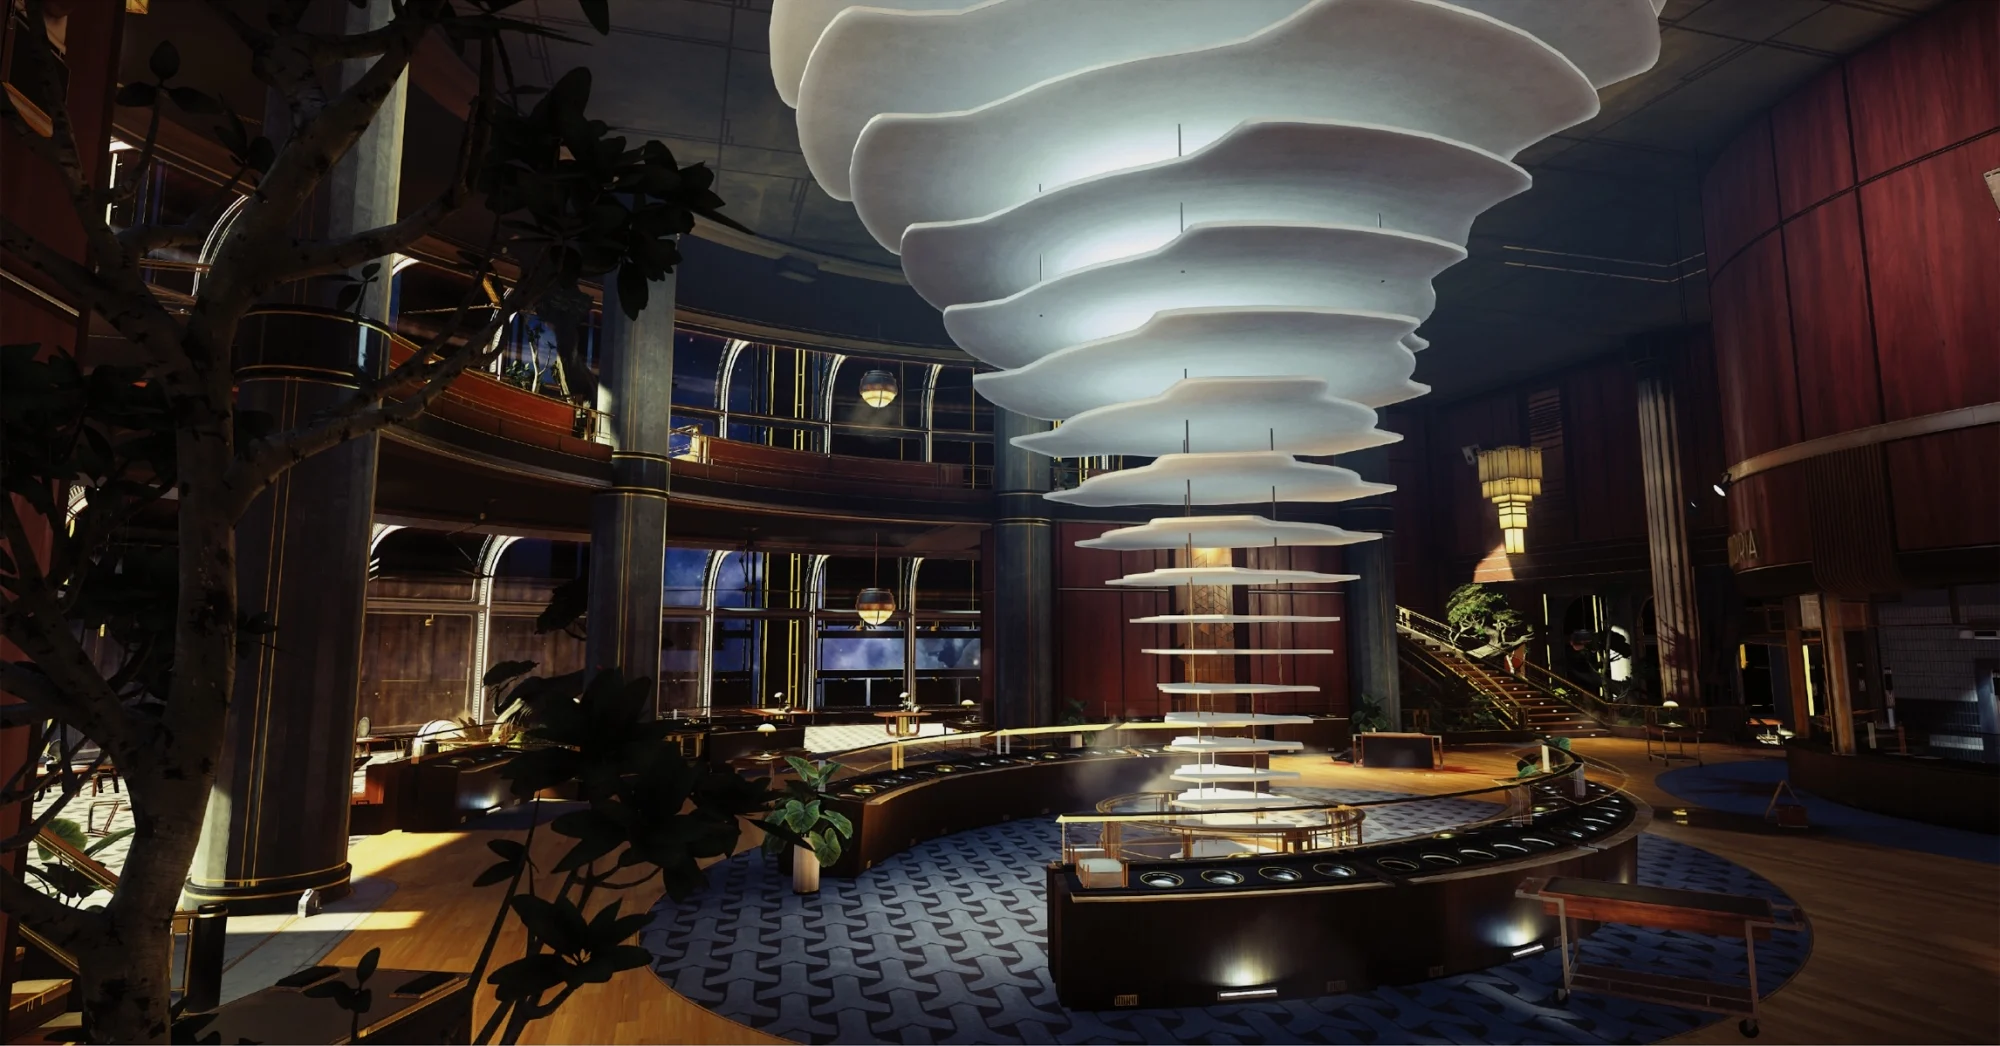 塔洛斯一号时代修建的餐厅中充满现代感的灯饰